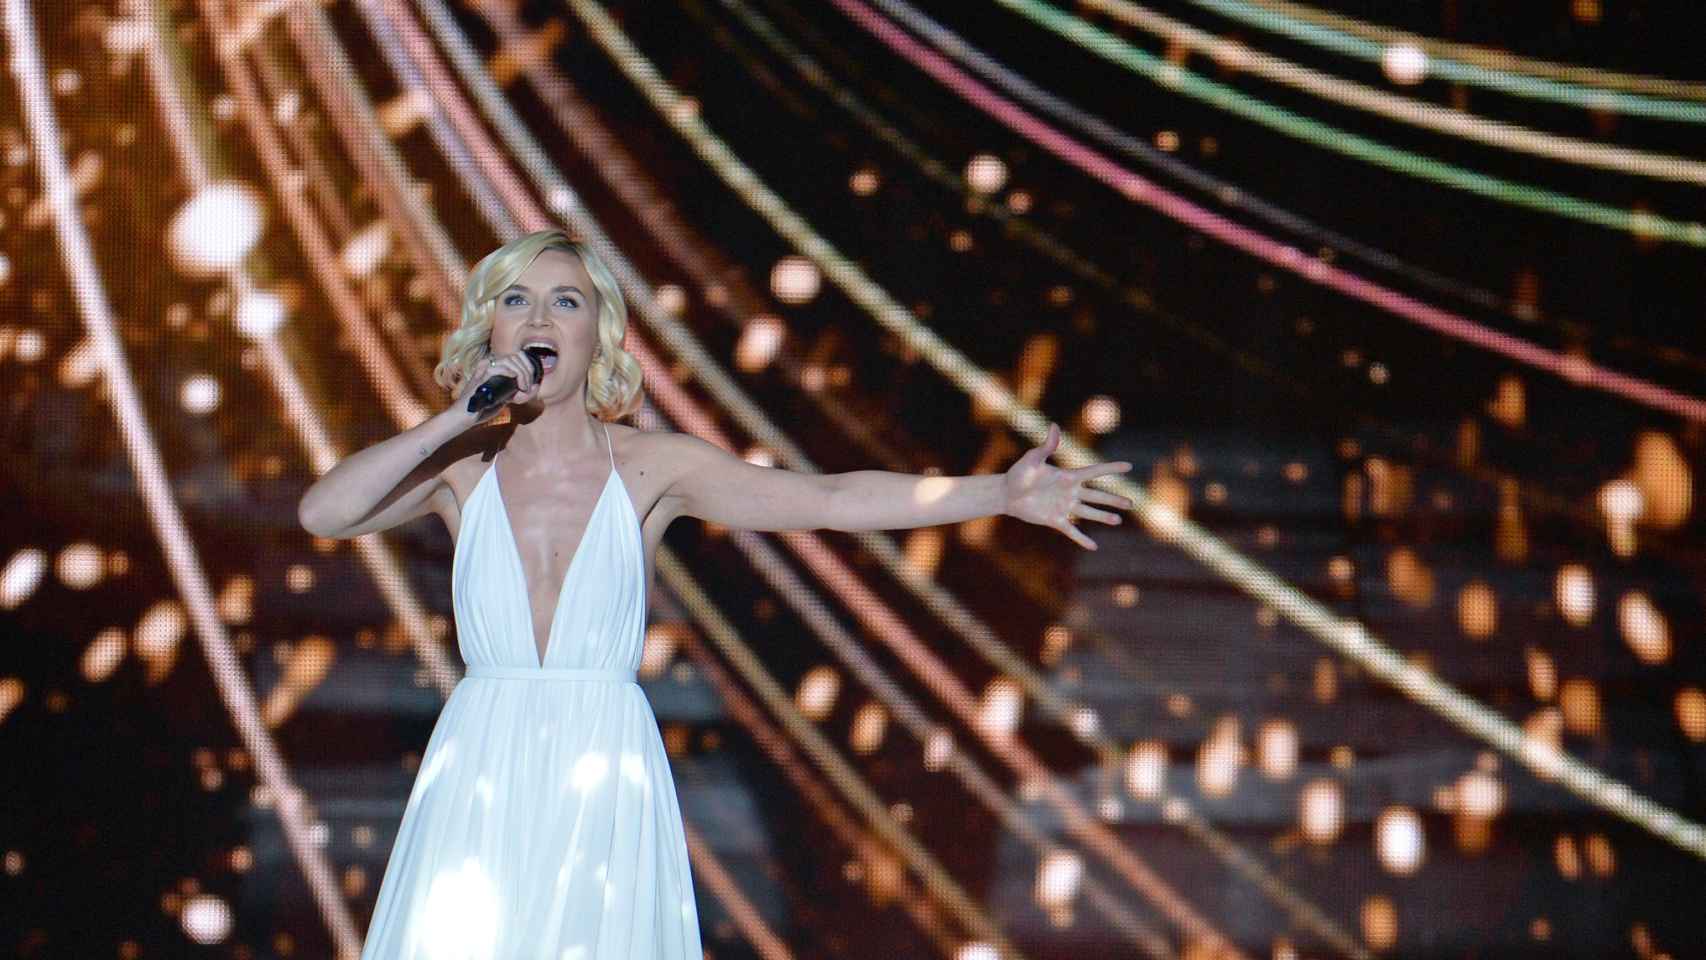 La rusa Polina Gagarina fue segunda en Eurovisión 2015 con el tema 'A million voices'.